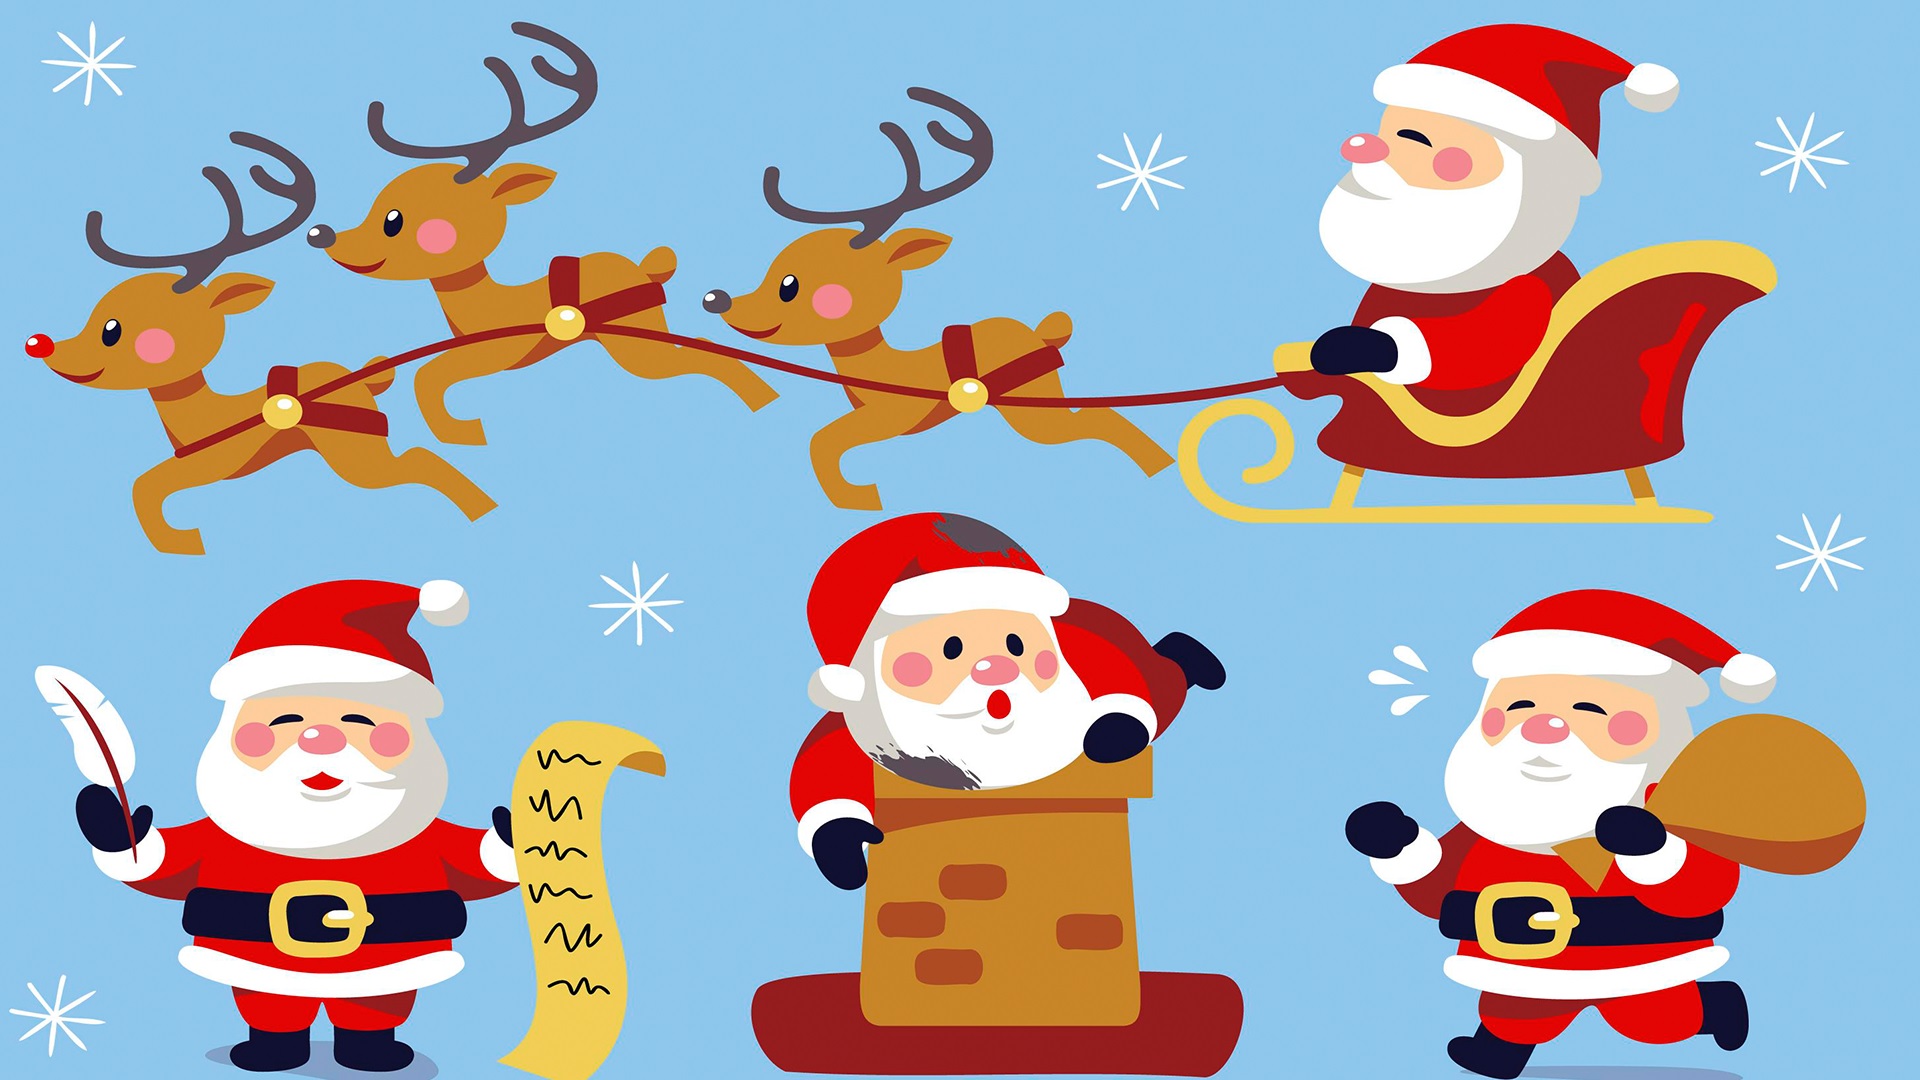 Mùa Đông là thời điểm của âm lịch, ông già Noel và ông già tuyết. Hãy chào đón mùa lễ hội bằng cách vẽ một bức hình đầy ấn tượng và tuyệt đẹp. Nhanh chóng \'\'like\'\' và chia sẻ bức hình này để truyền cảm hứng cho mọi người nhé!